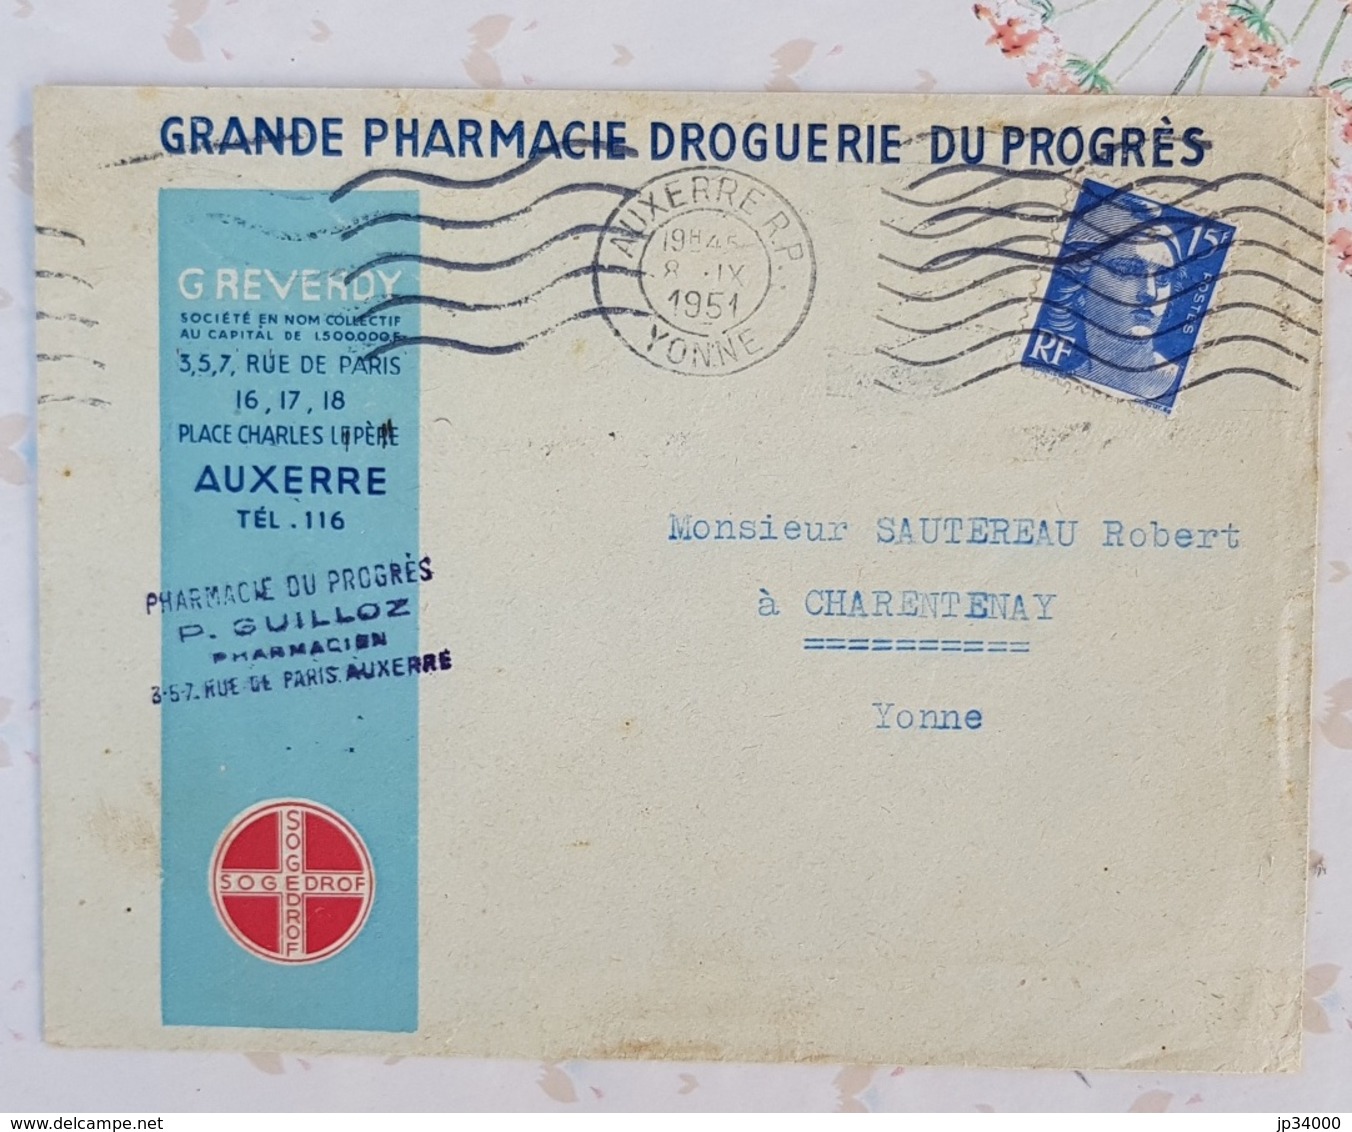 FRANCE Phamarcie, Medecine, Lettre A Entete Publicitaire GRANDE PHARMACIE DU PROGRES à AUXERRE 1951 - Pharmacy